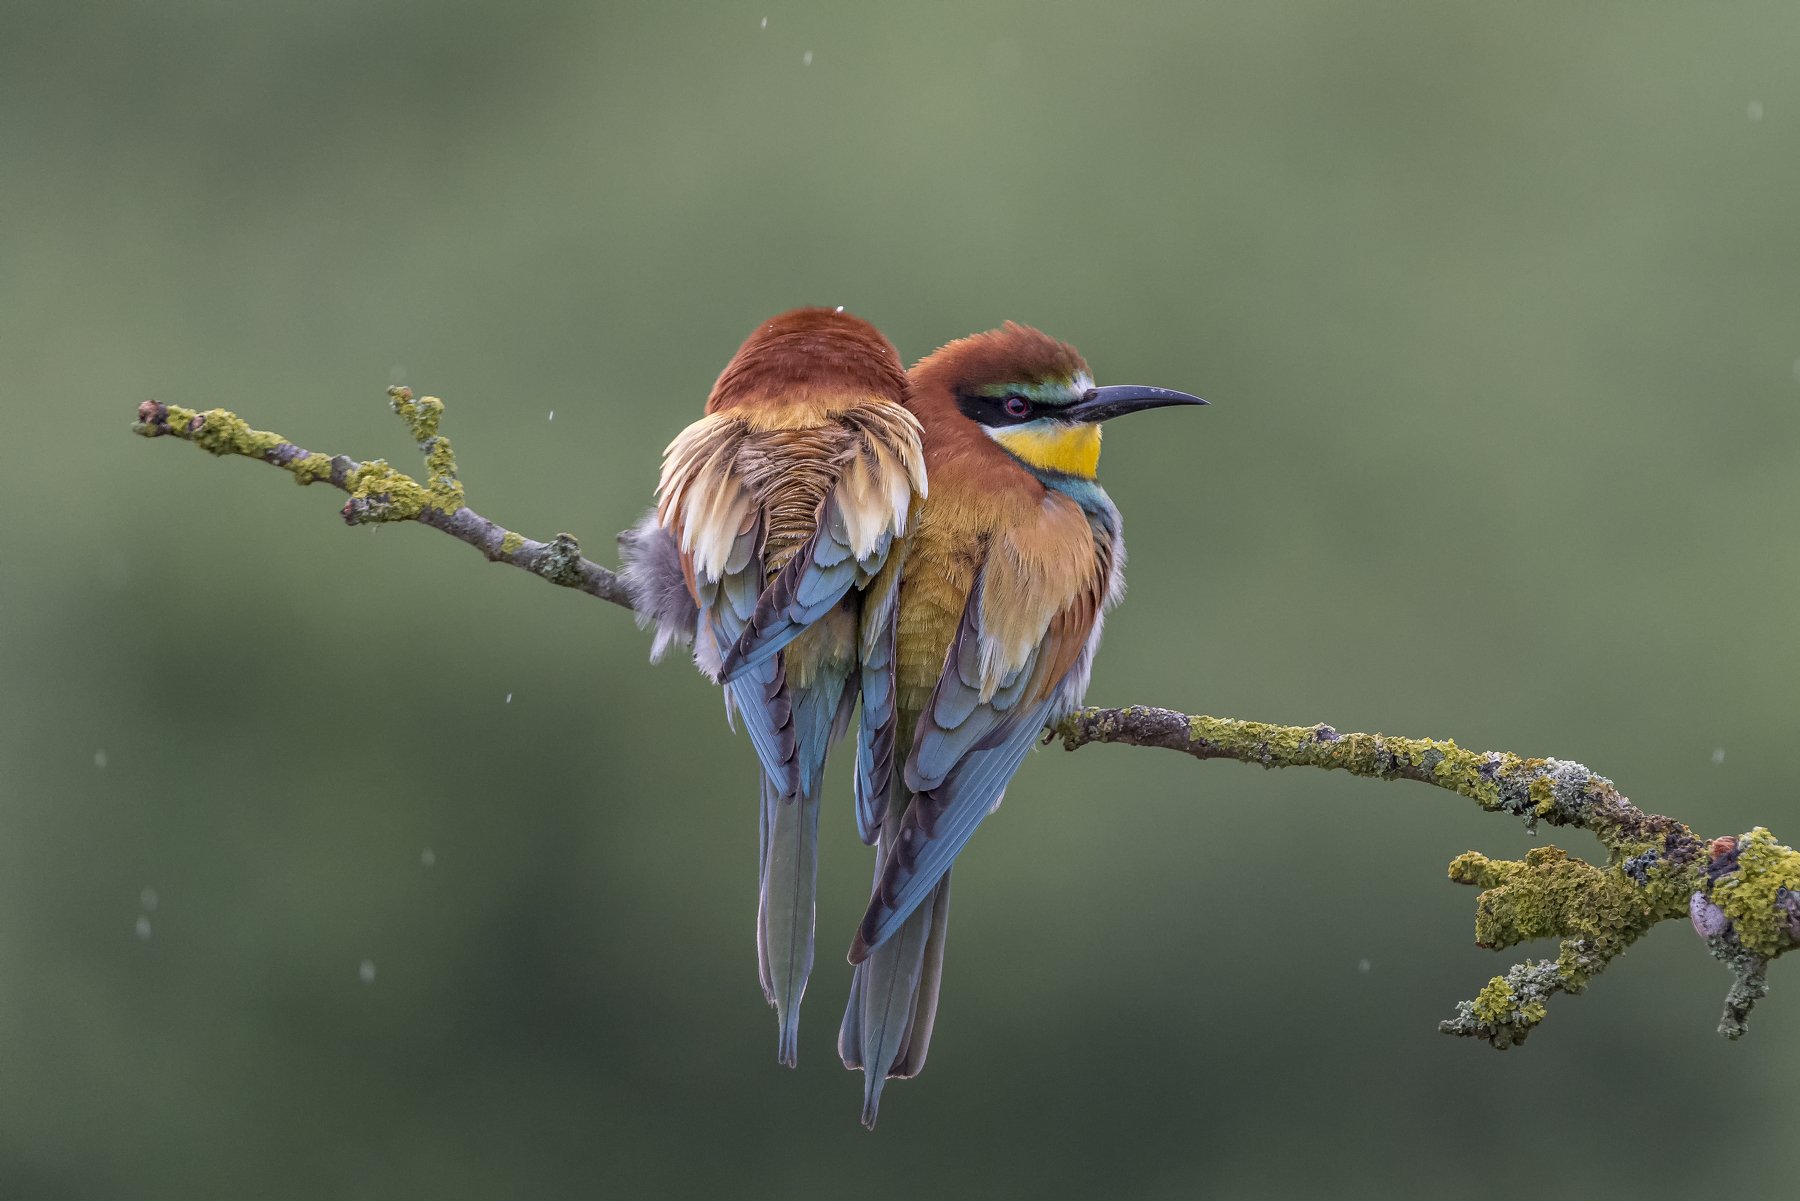 European Bee-eater, Merops apiaster, Birder's Corner, Dominik Chrzanowski